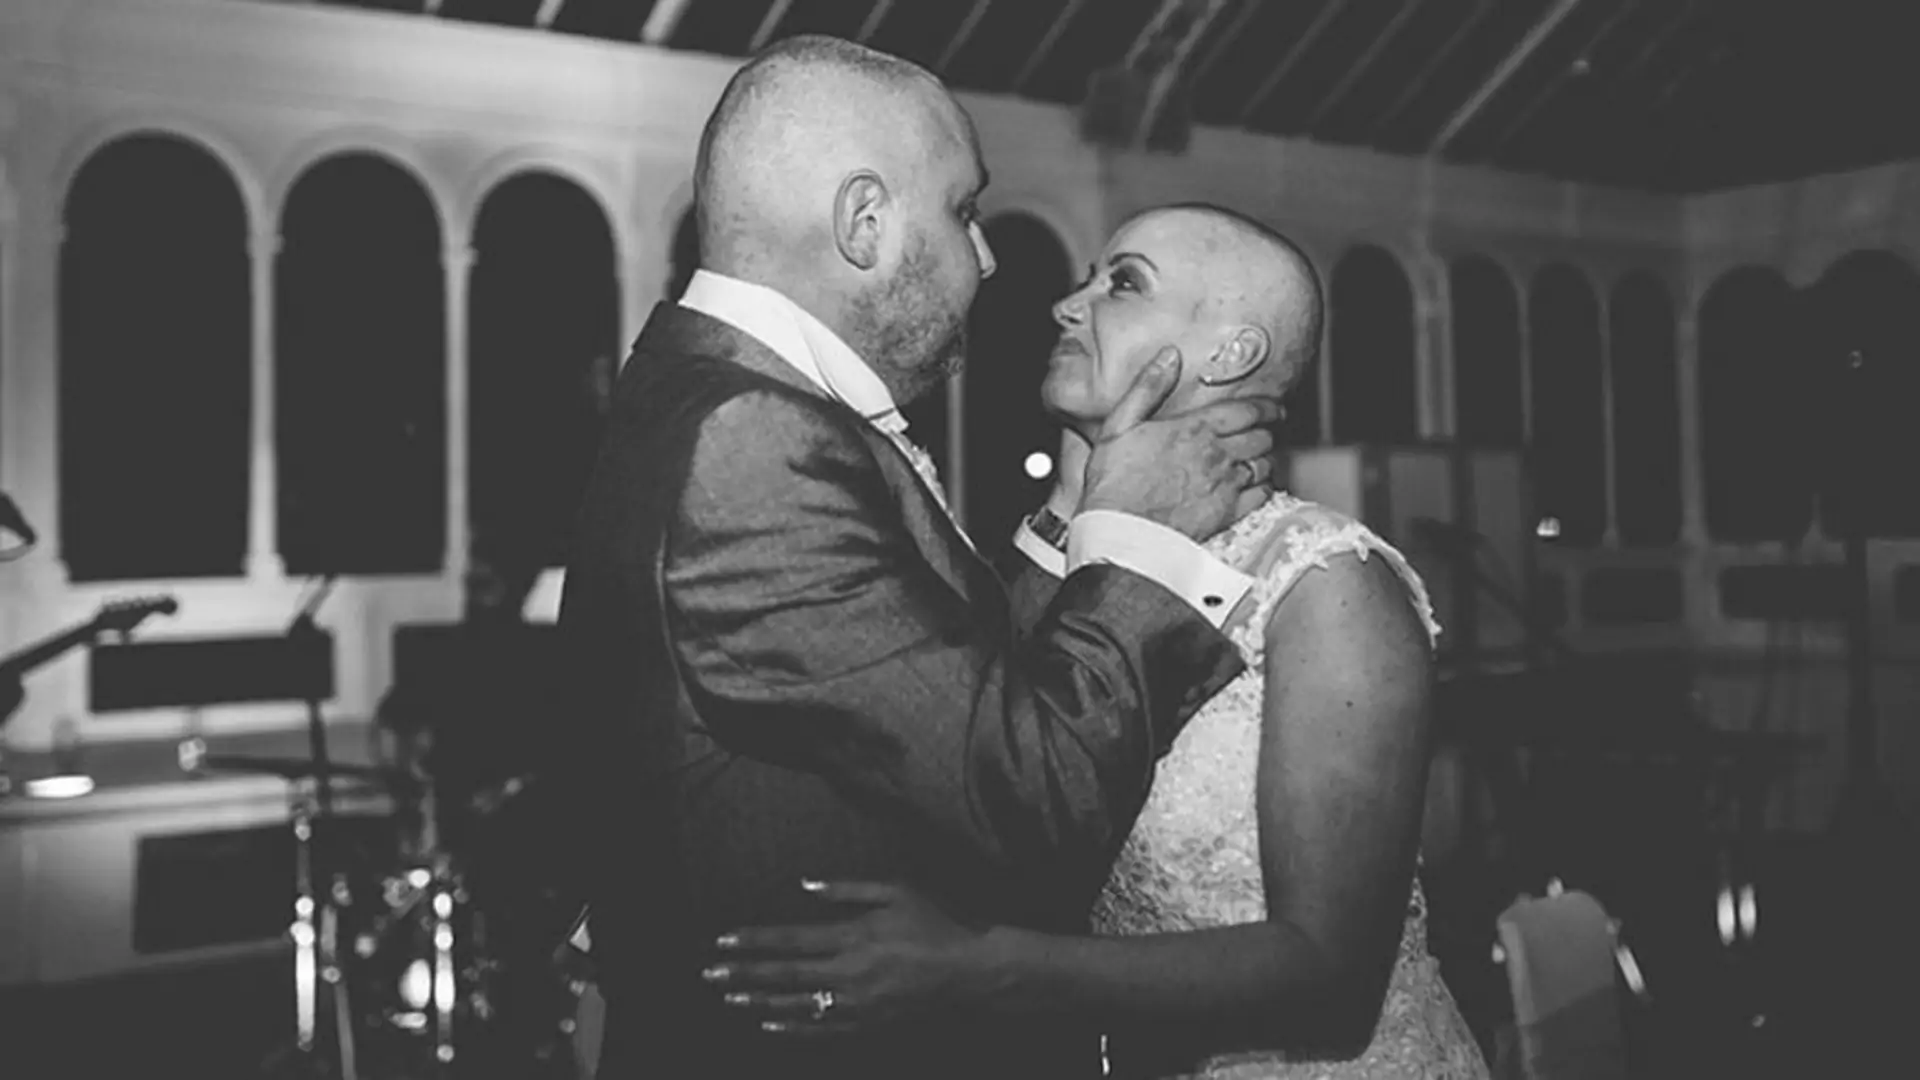 W trakcie wesela ogoliła swoją głowę, by wesprzeć męża chorego na raka. Obok tych zdjęć nie da się przejść obojętnie!